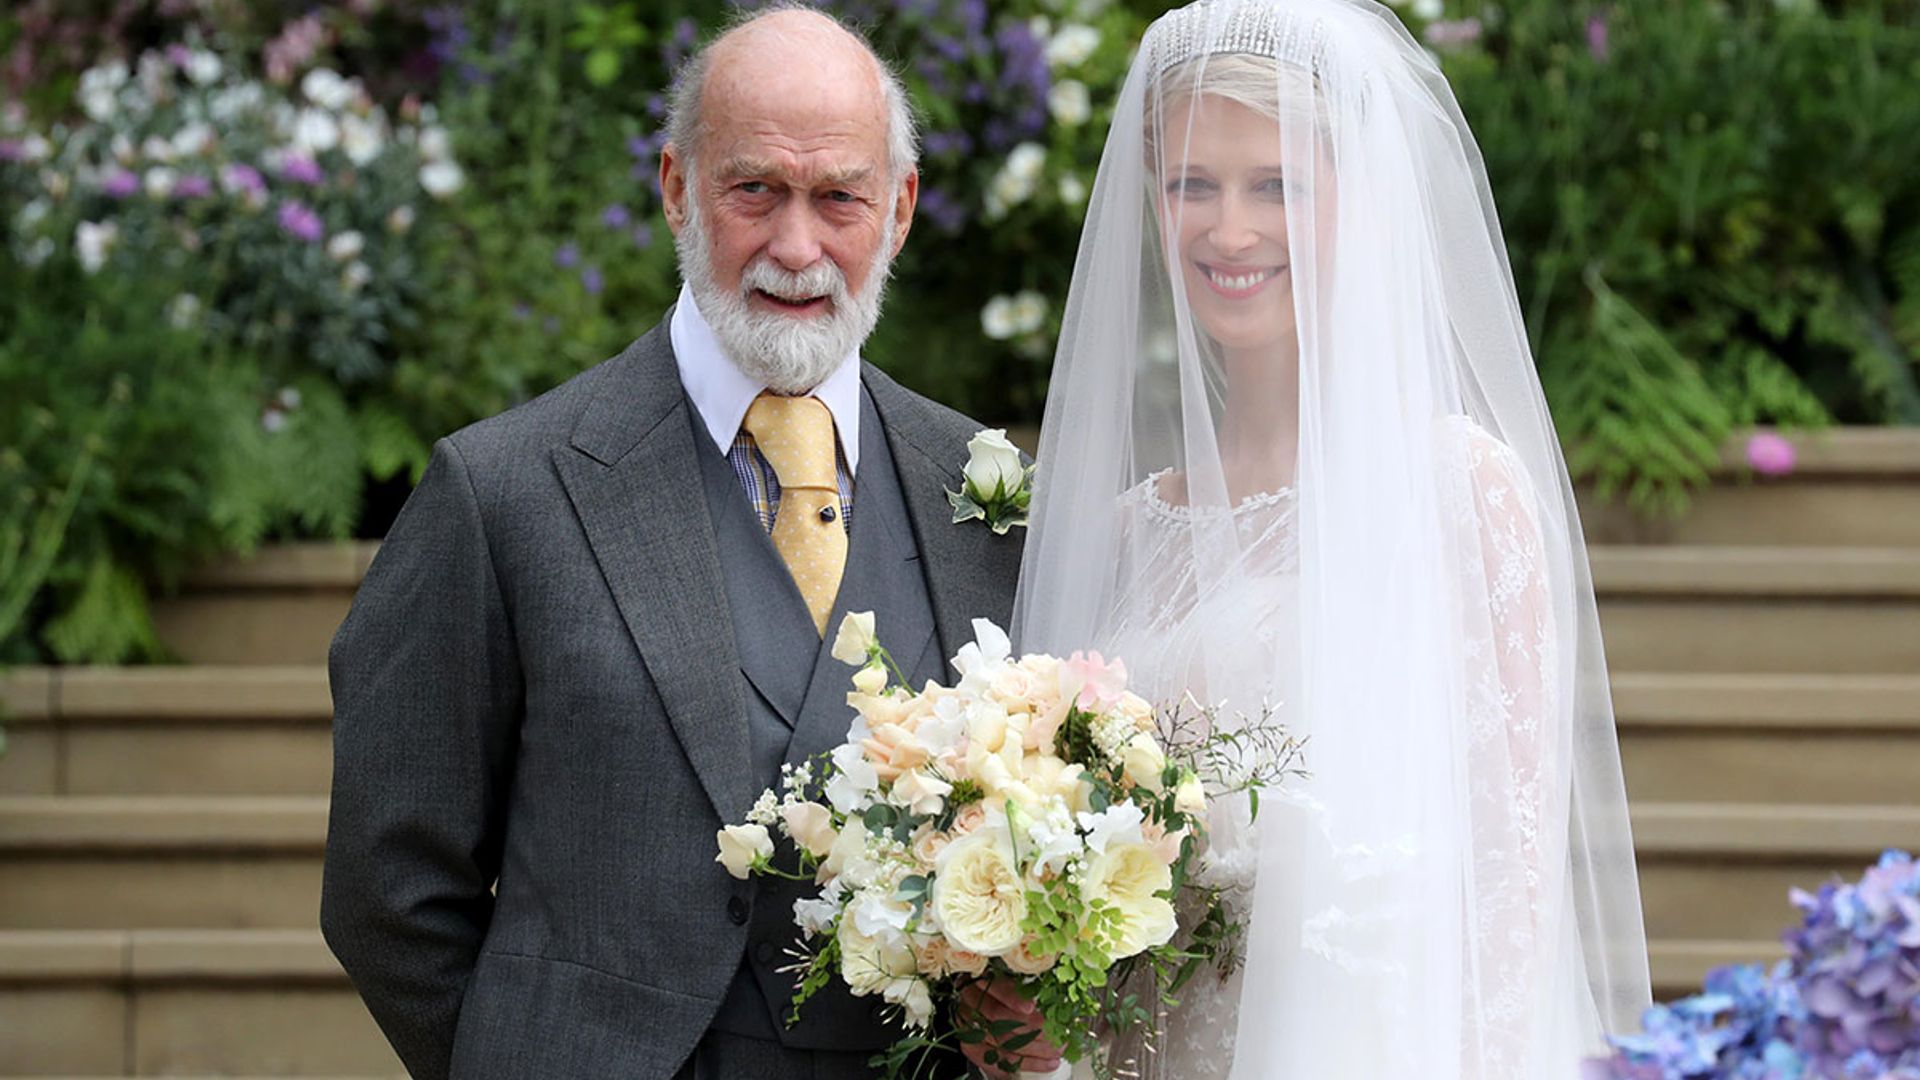 Lady Gabriella Windsor to wear FOUR wedding dresses to her royal wedding